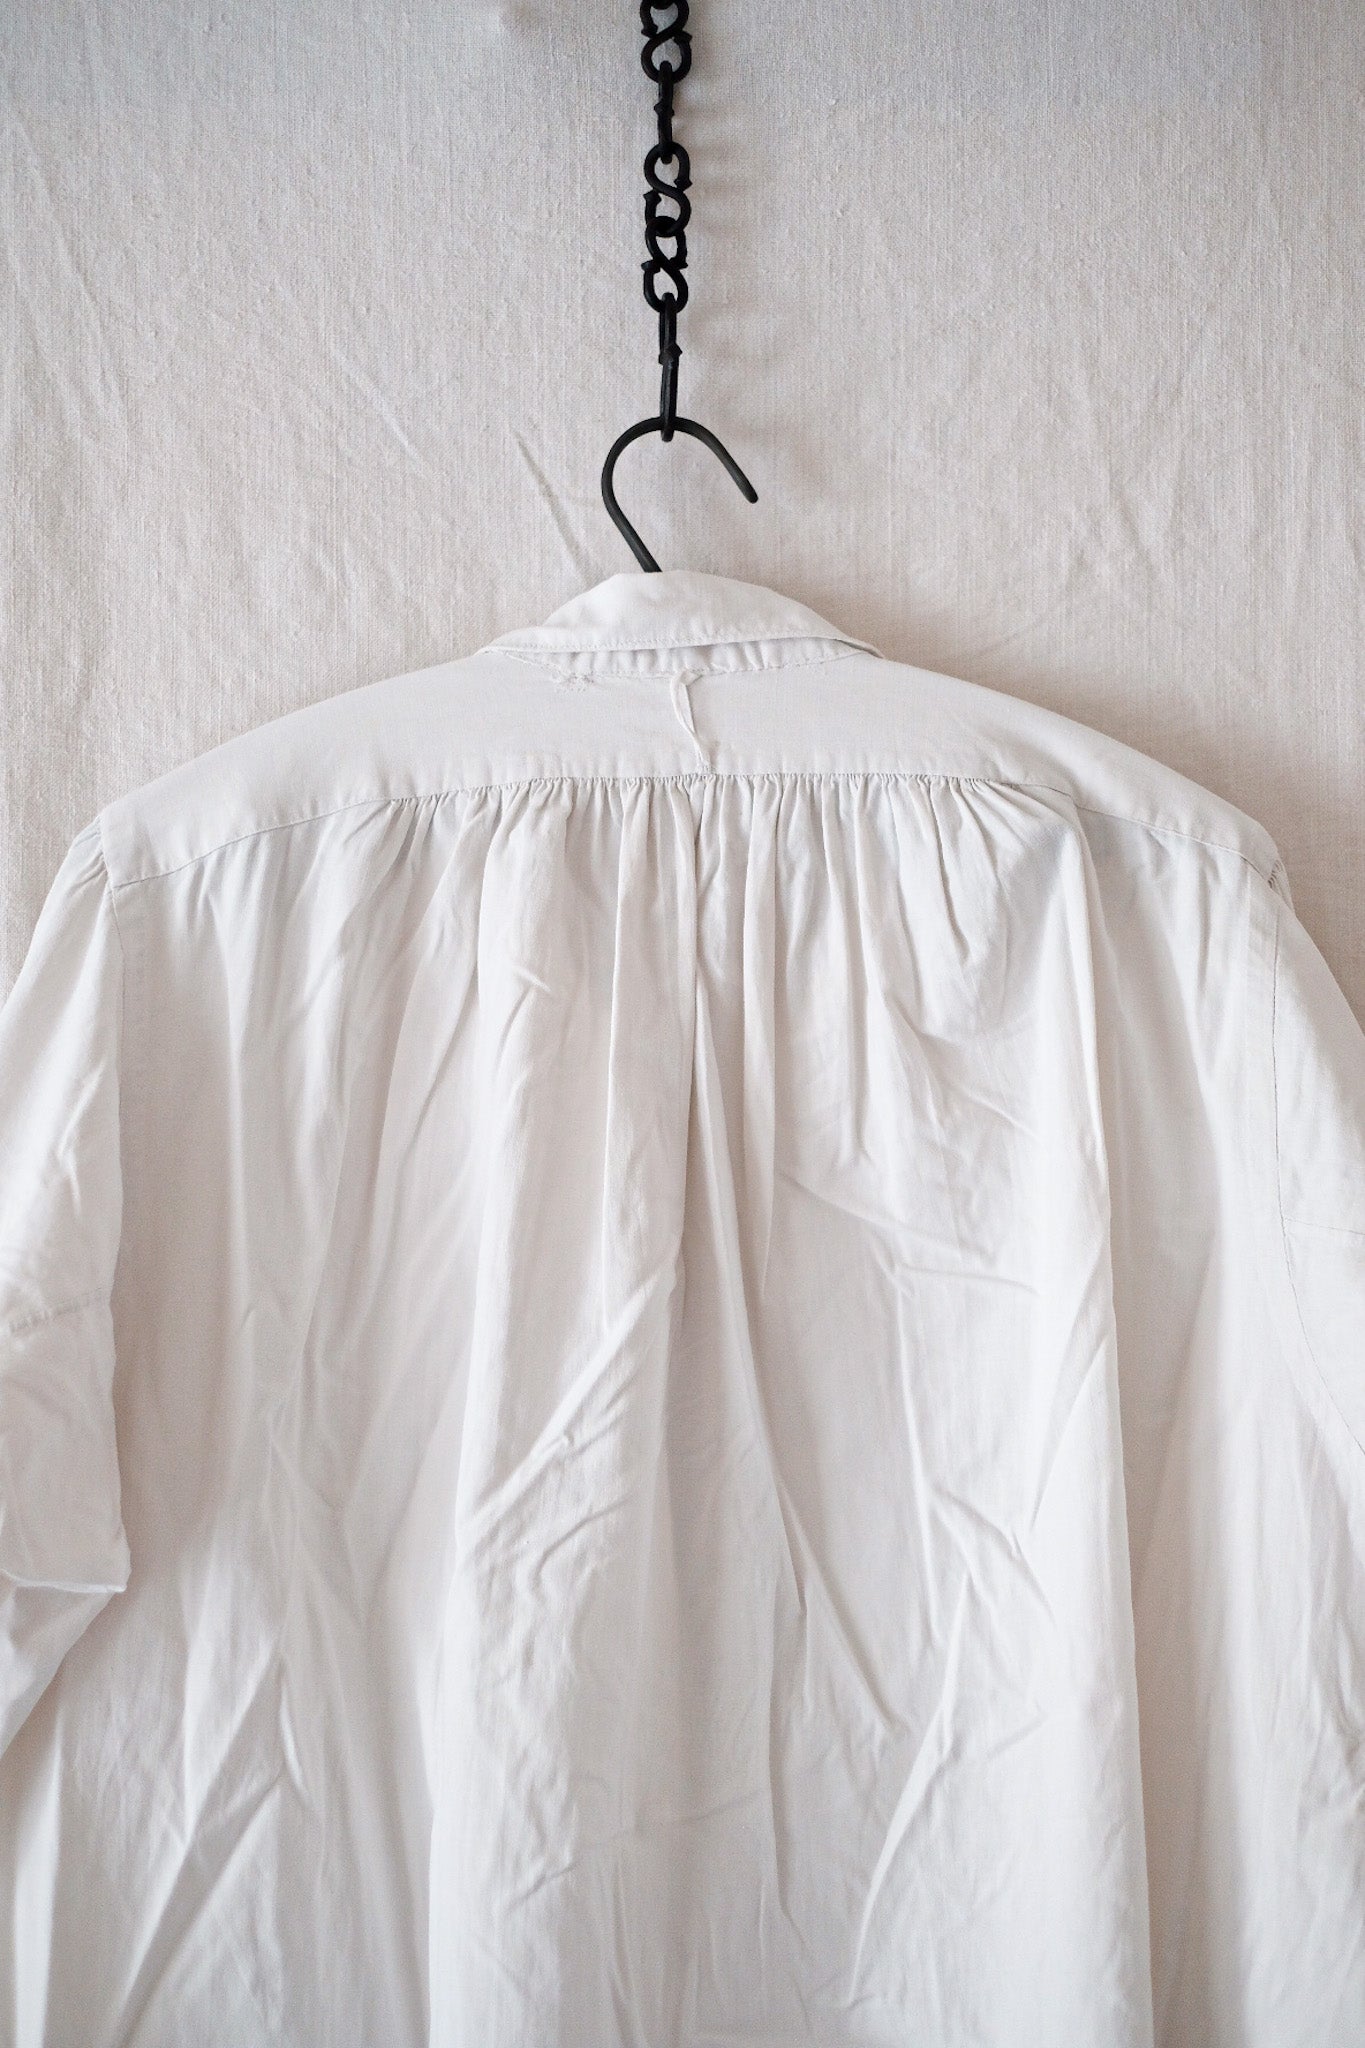 [20 c]法國古董棉襯衫